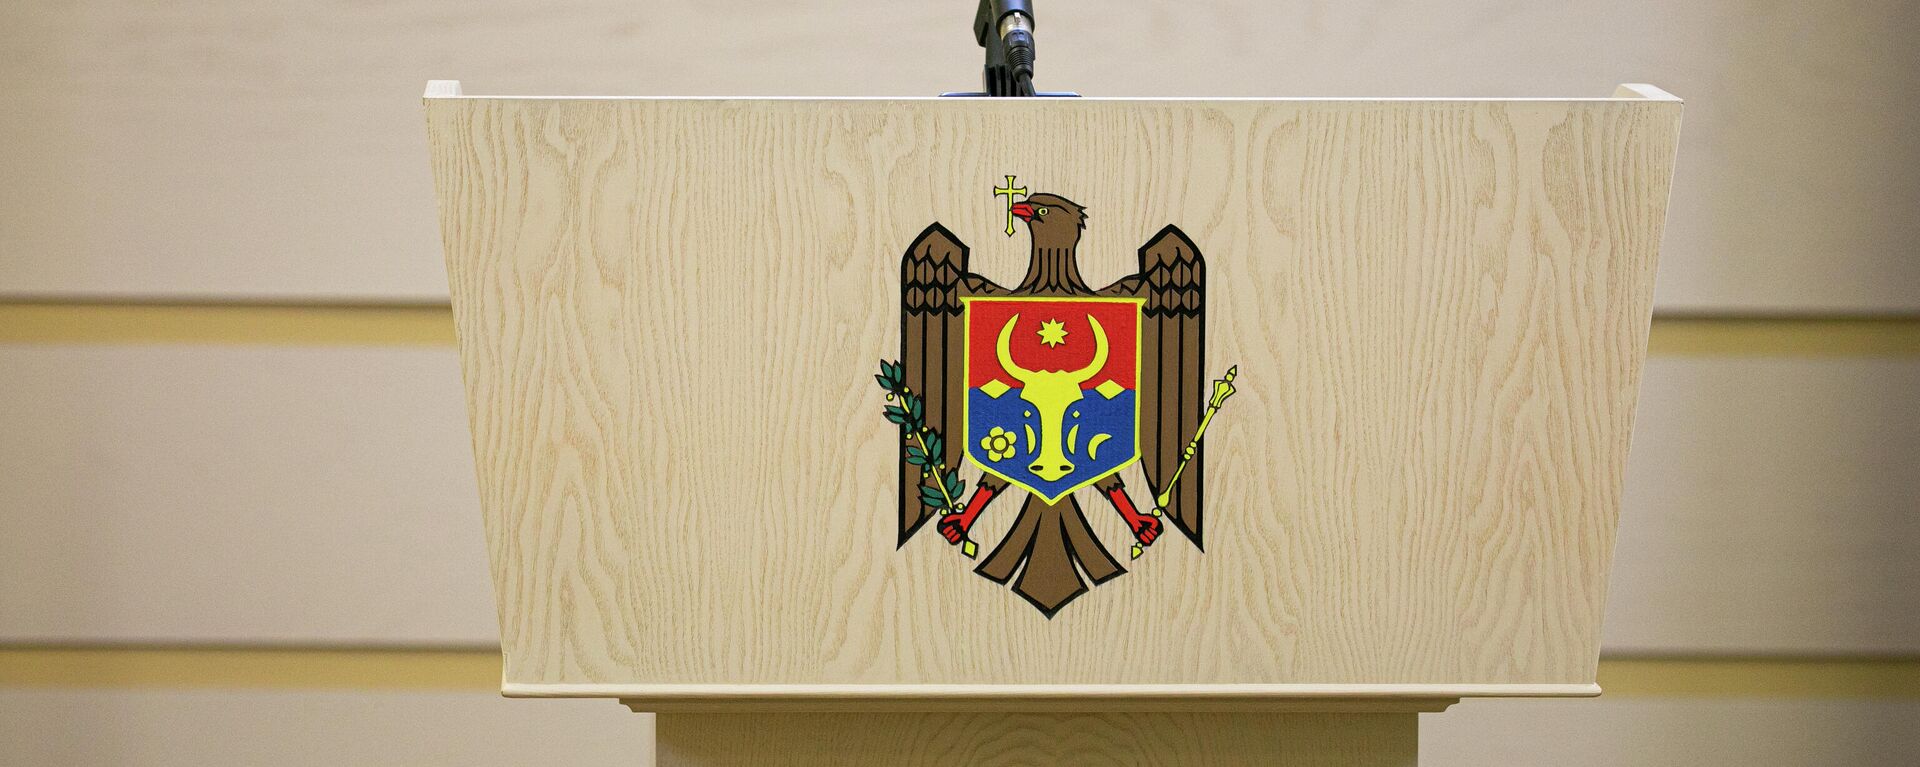 Ședința de constituire a Parlamentului de Legislatura a XI-a - 26 iulie 2021 - Sputnik Молдова, 1920, 23.09.2021